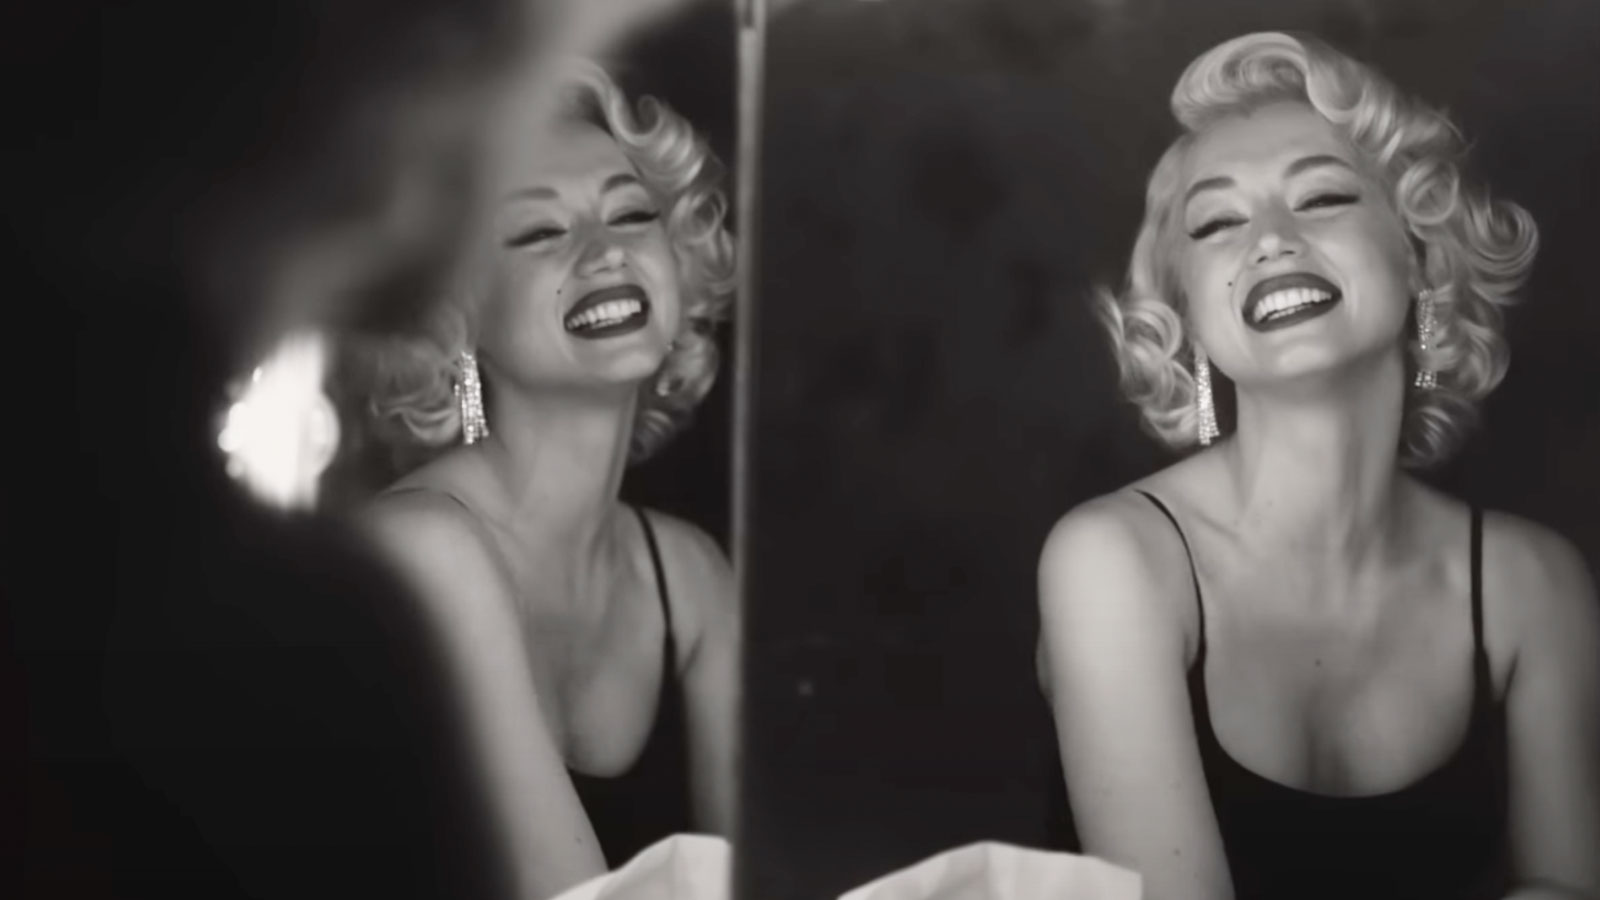 Blonde, Marilyn Monroe o Norma Jean?: Una donna distrutta dagli uomini. La recensione